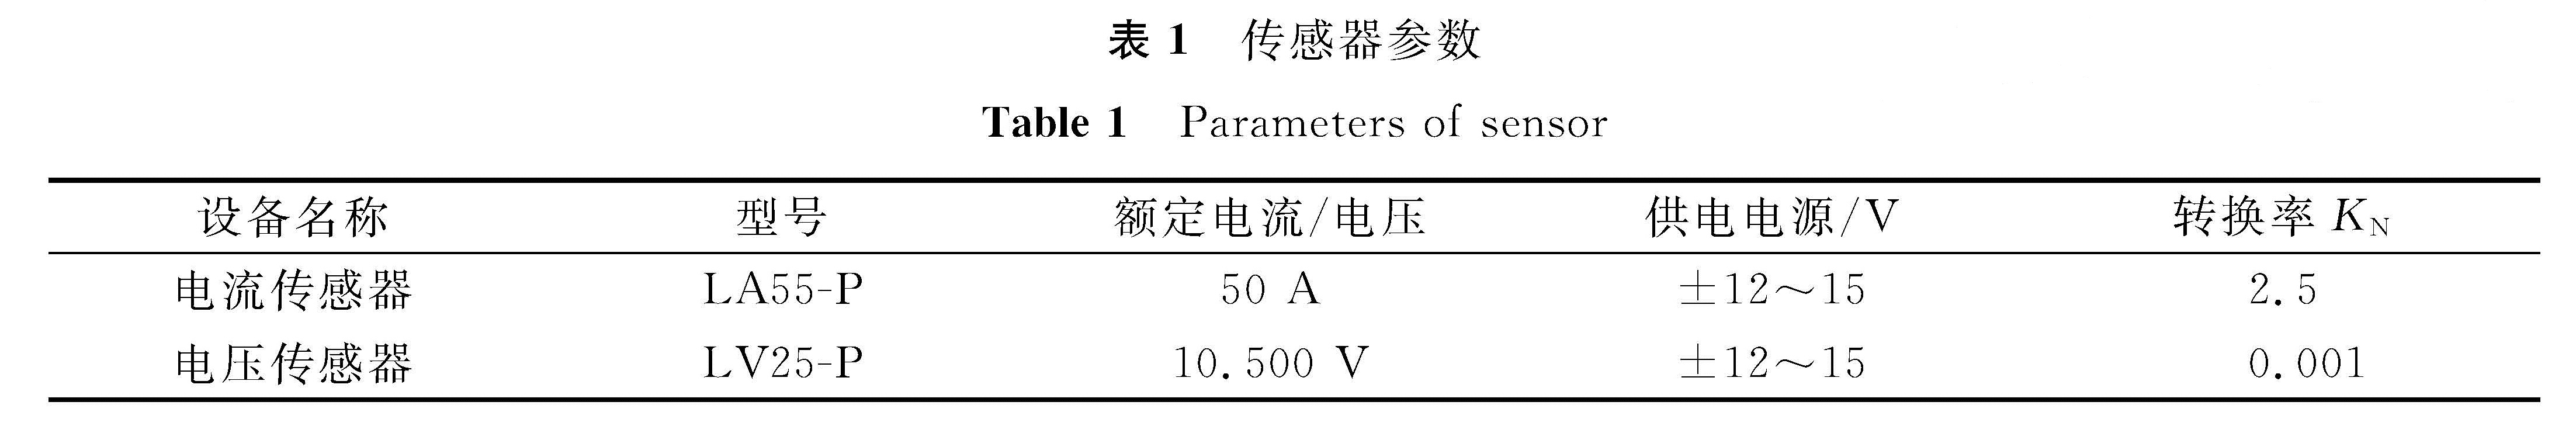 表1 传感器参数<br/>Table 1 Parameters of sensor